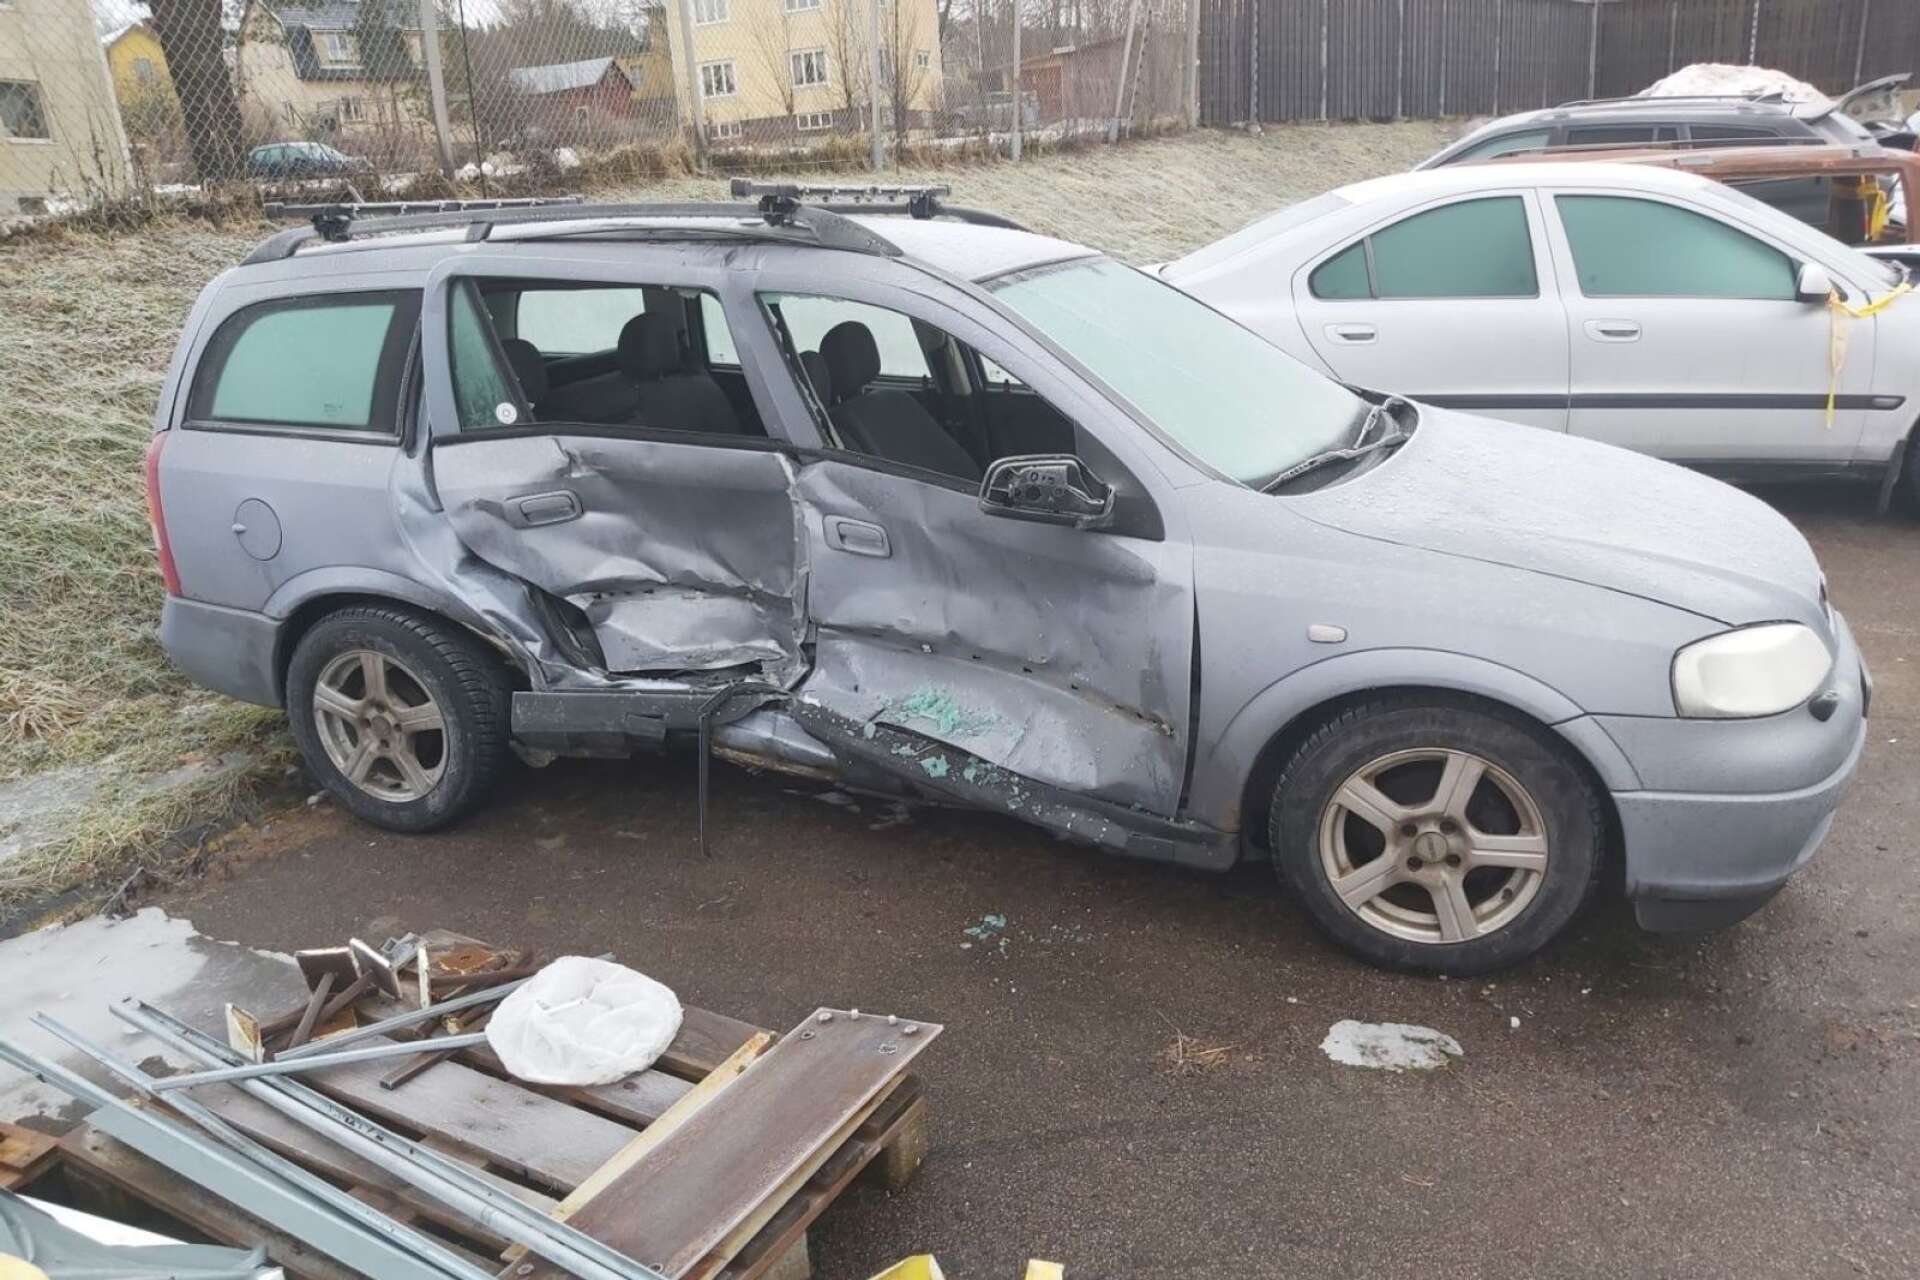 Så här såg bilen ut efter att den bärgats bort från olycksplatsen. Hanna Johansson säger att det var tur att krocken skedde på passagerarsidan och inte där hon satt – annars hade allt nog kunnat sluta mycket värre. 